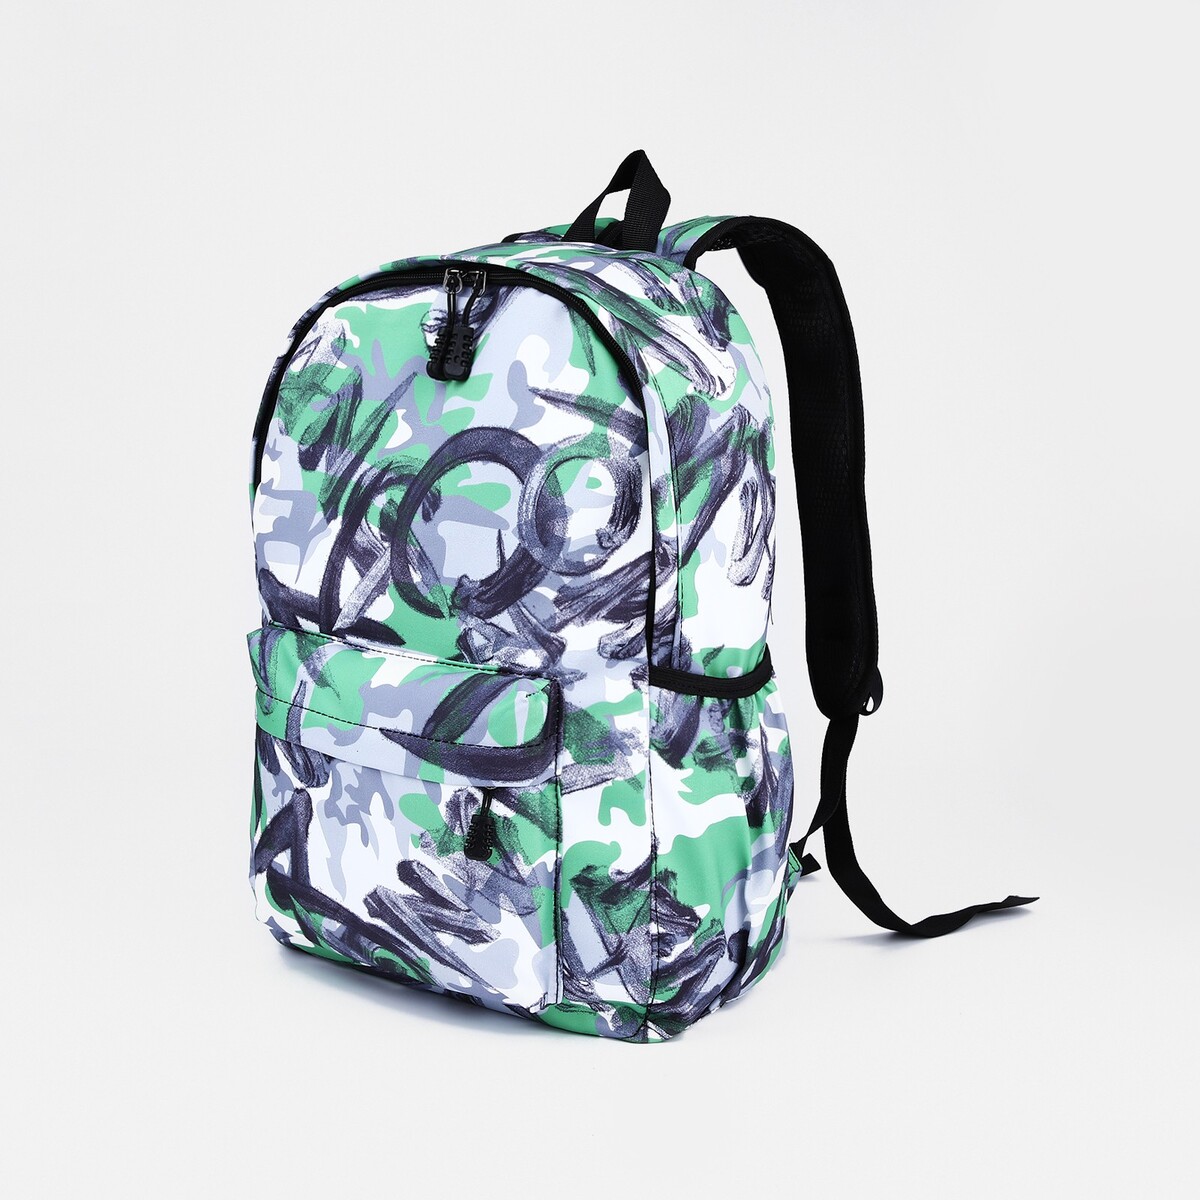 Рюкзак школьный из текстиля на молнии, 3 кармана, цвет зеленый/серый